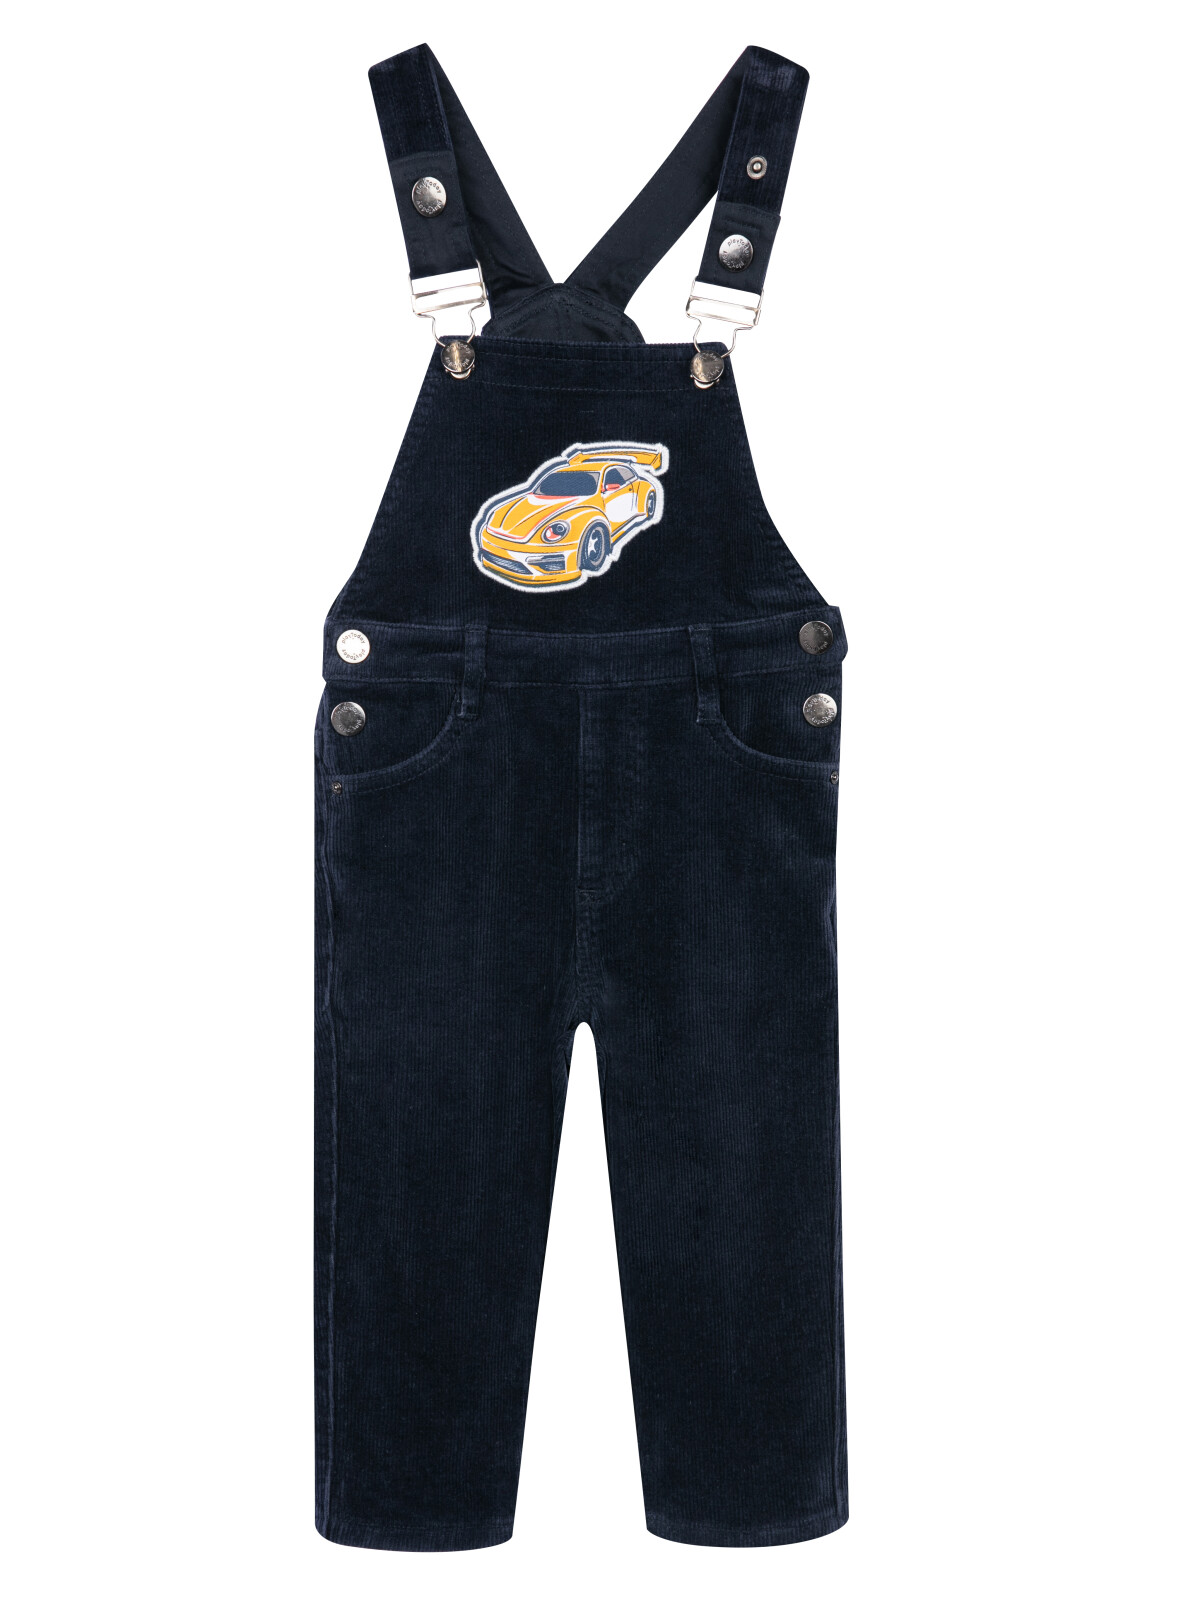 Полукомбинезон детский текстильный джинсовый утепленный флисом для мальчиков PlayToday, 92